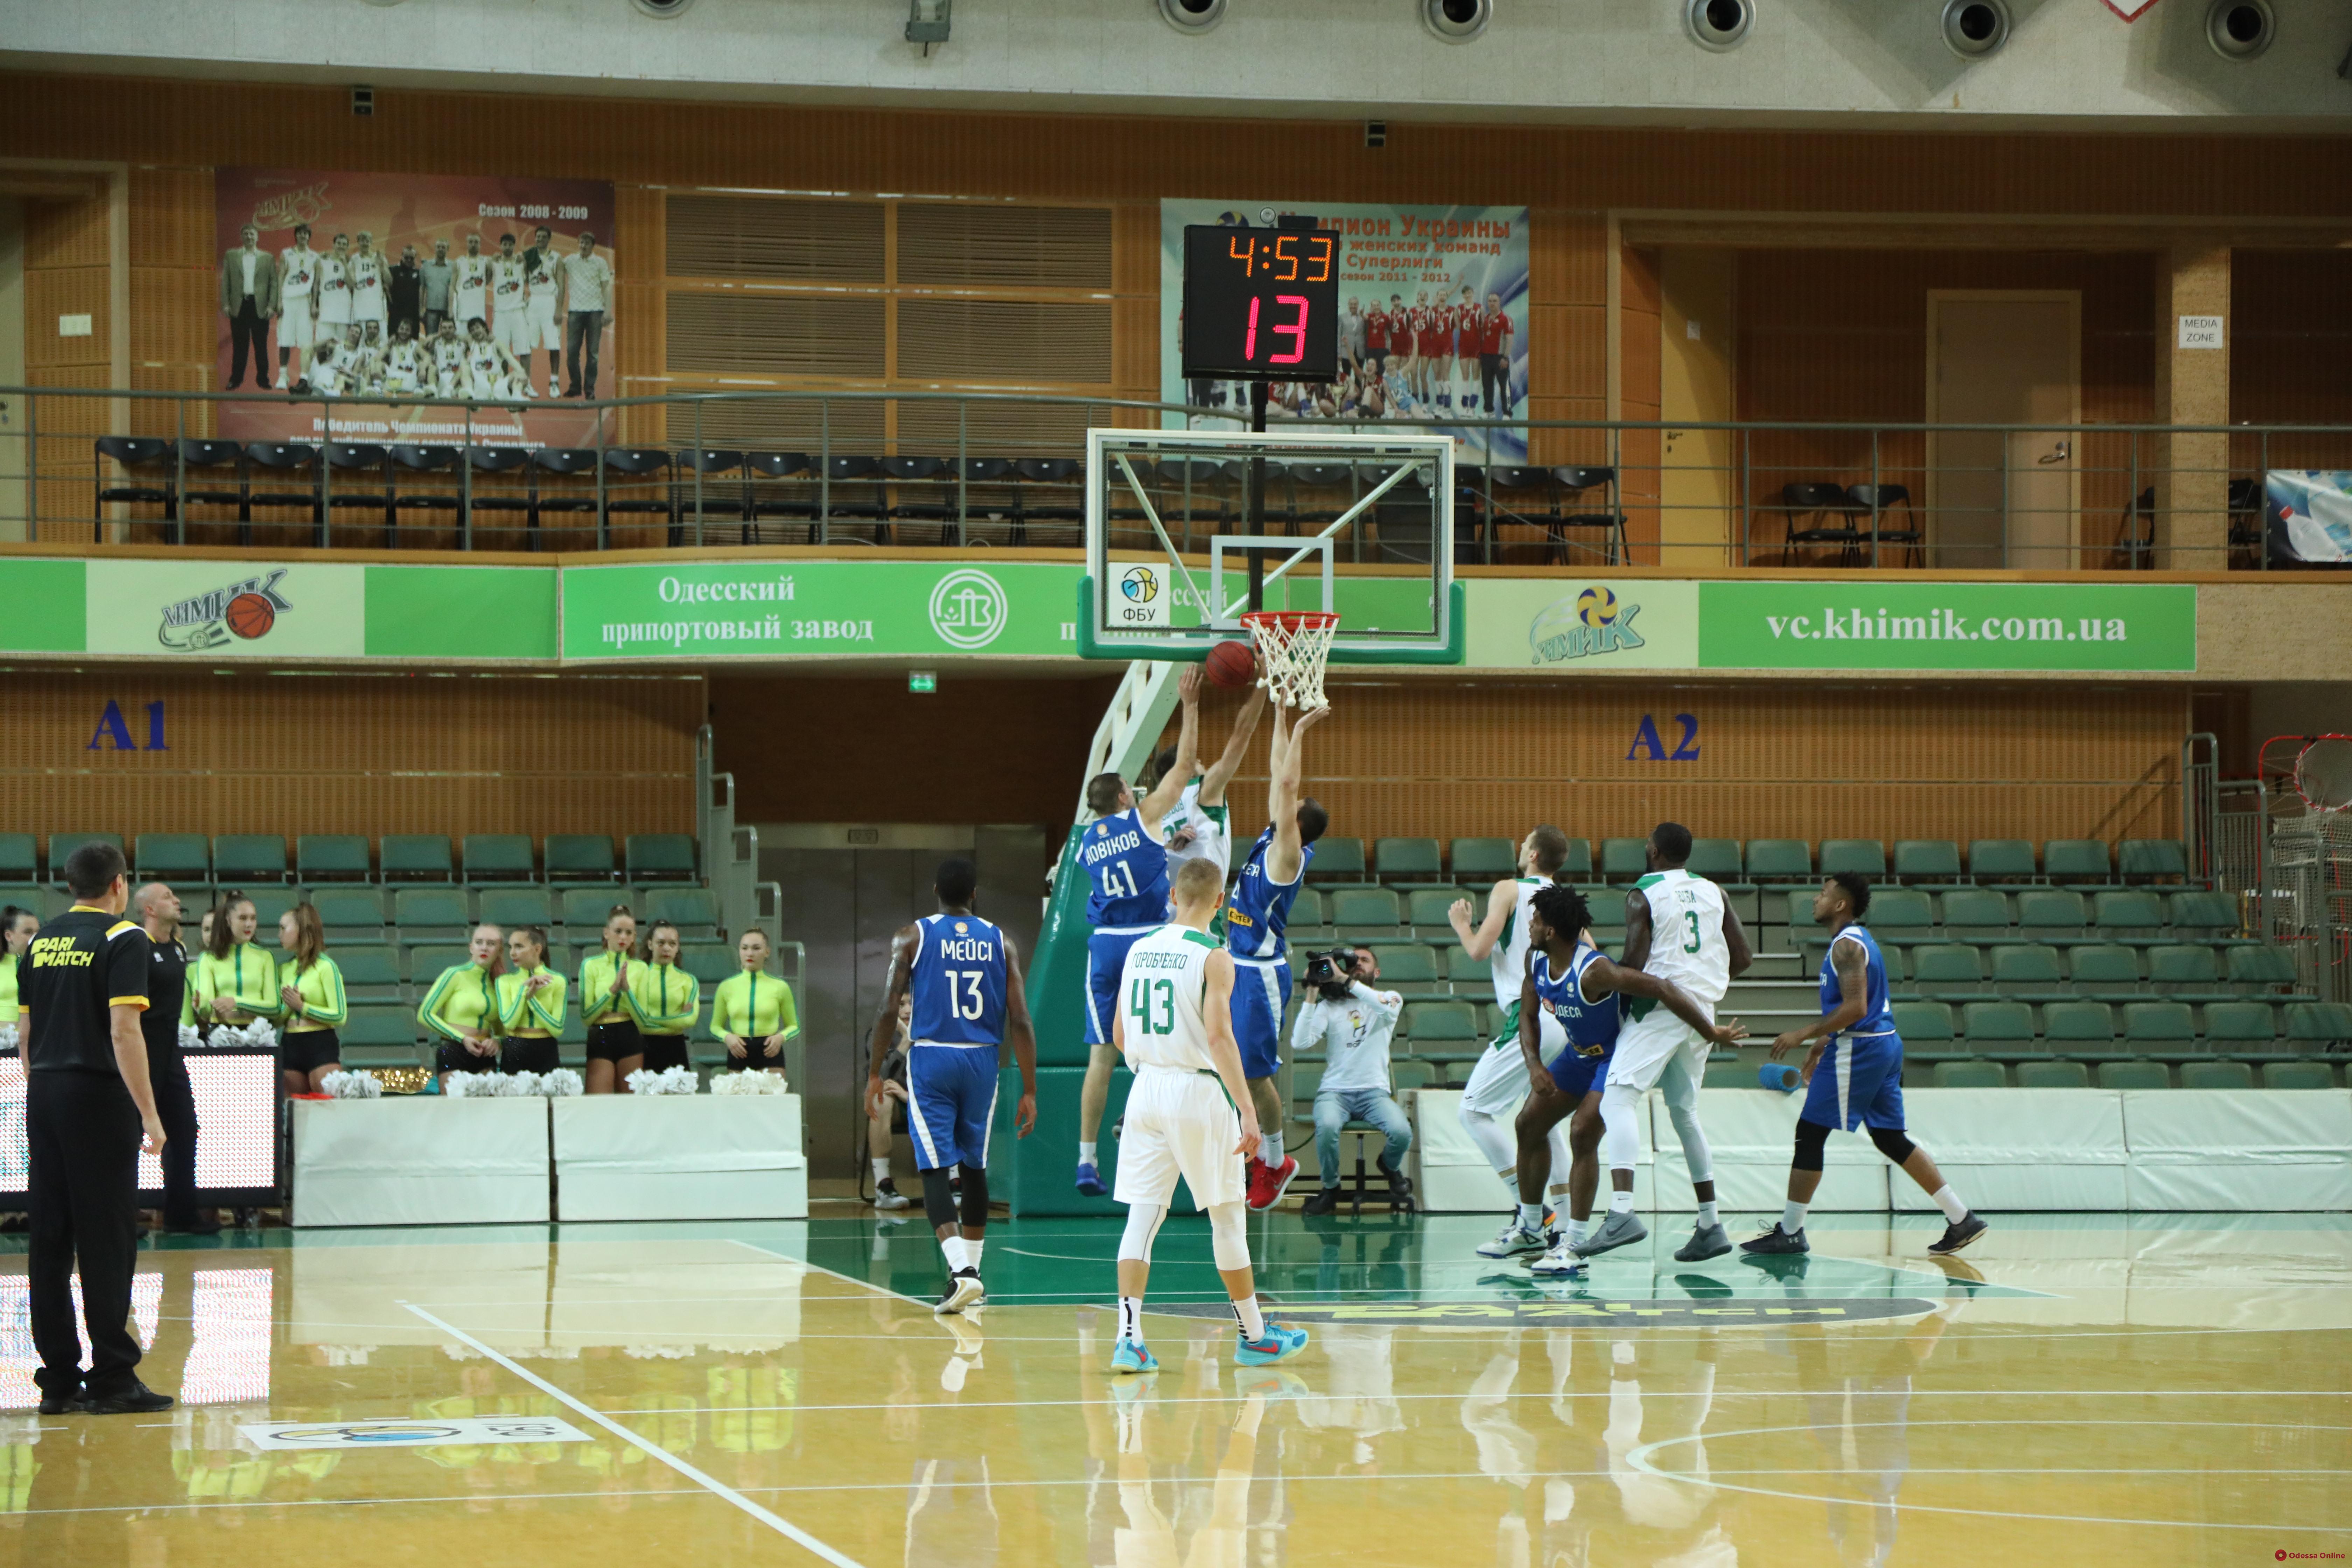 Баскетбол: южненский «Химик» обыграл БК «Одесса» в стартовом матче Суперлиги